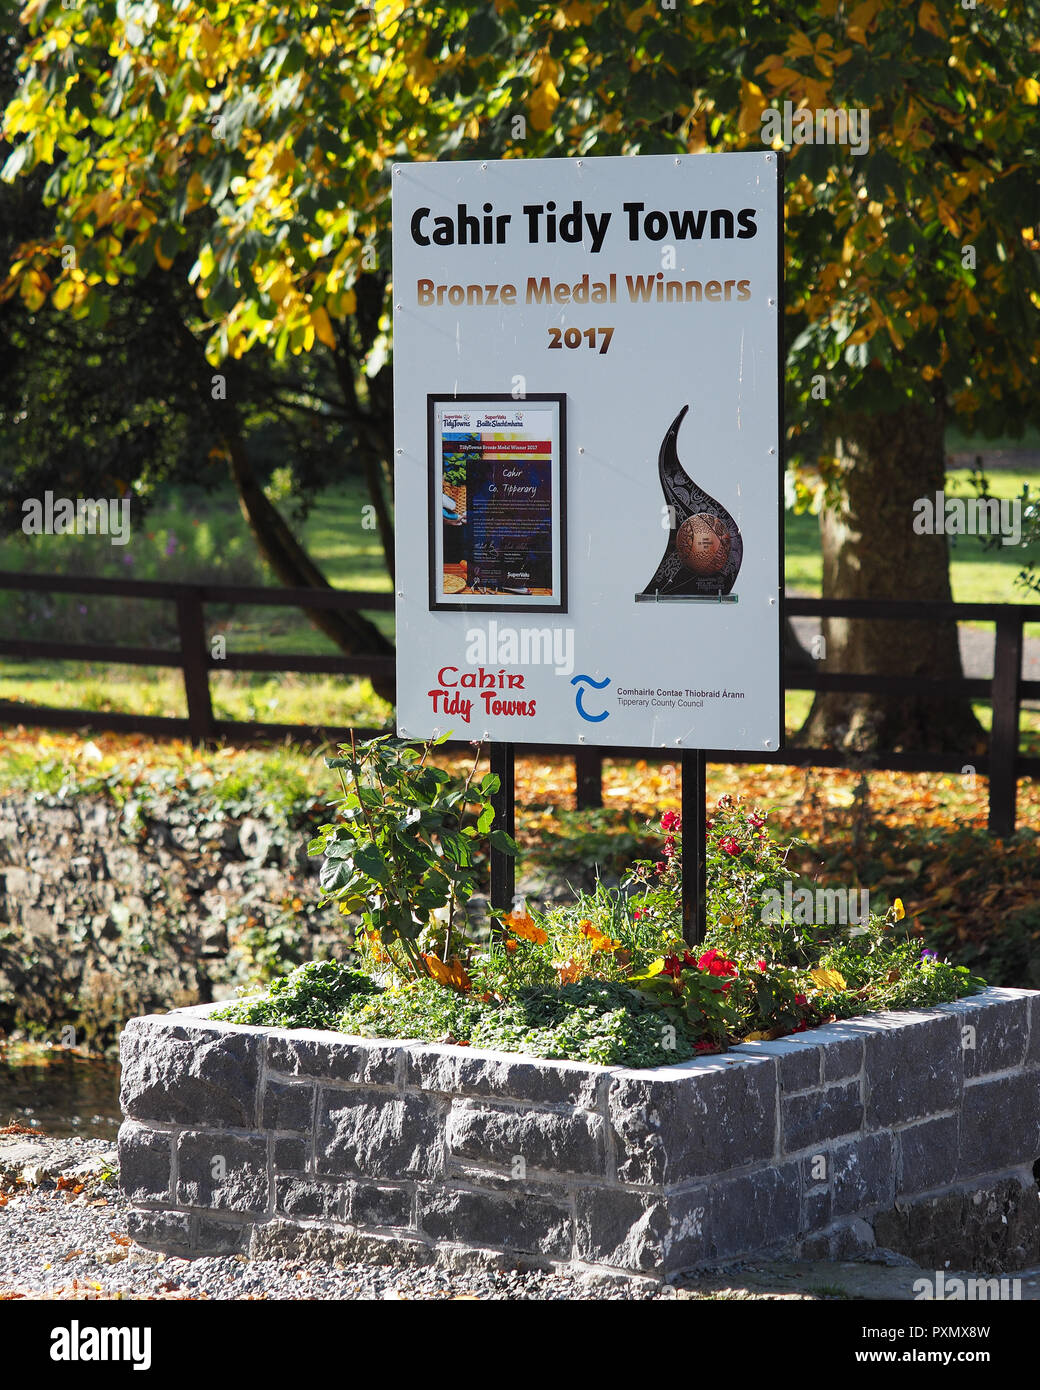 À côté de Château de Cahir à Tipperary, Irlande montrant que la ville de Cahir était un médaillé de bronze au concours Villes tidy 2017. Cahir, Tipperary, Banque D'Images